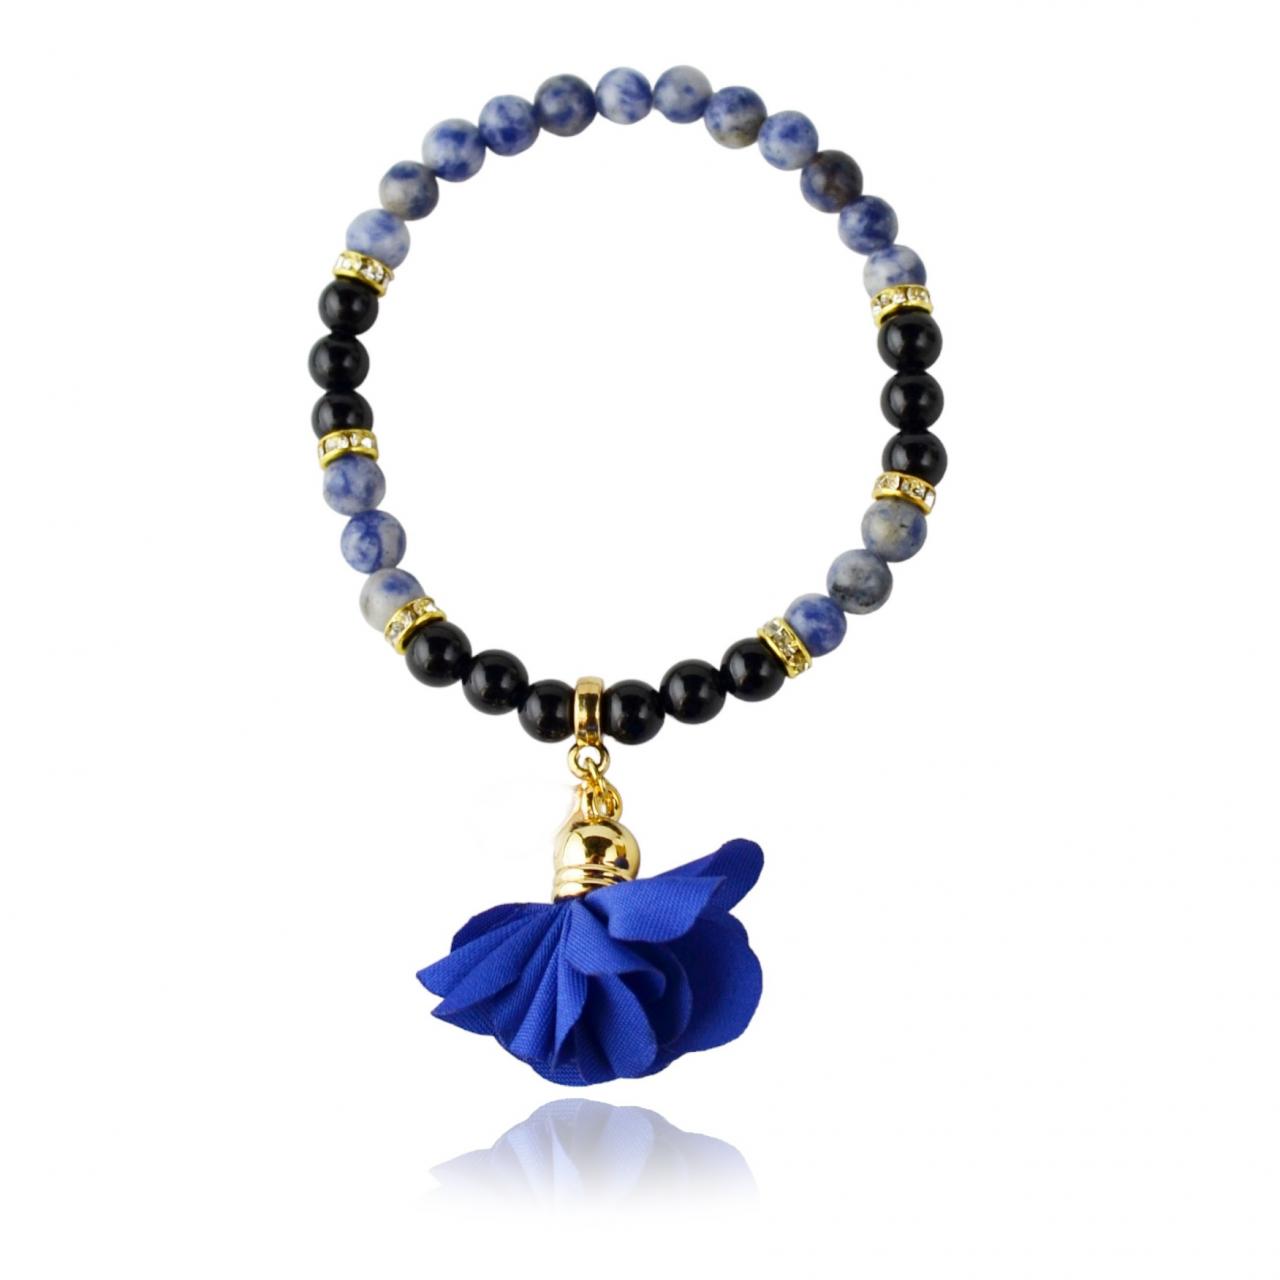 Sodalite Agate Bracelet With Natural Gemstone Beads Gift Idea For Her For Mom For Girls | Maritavita | Kk04